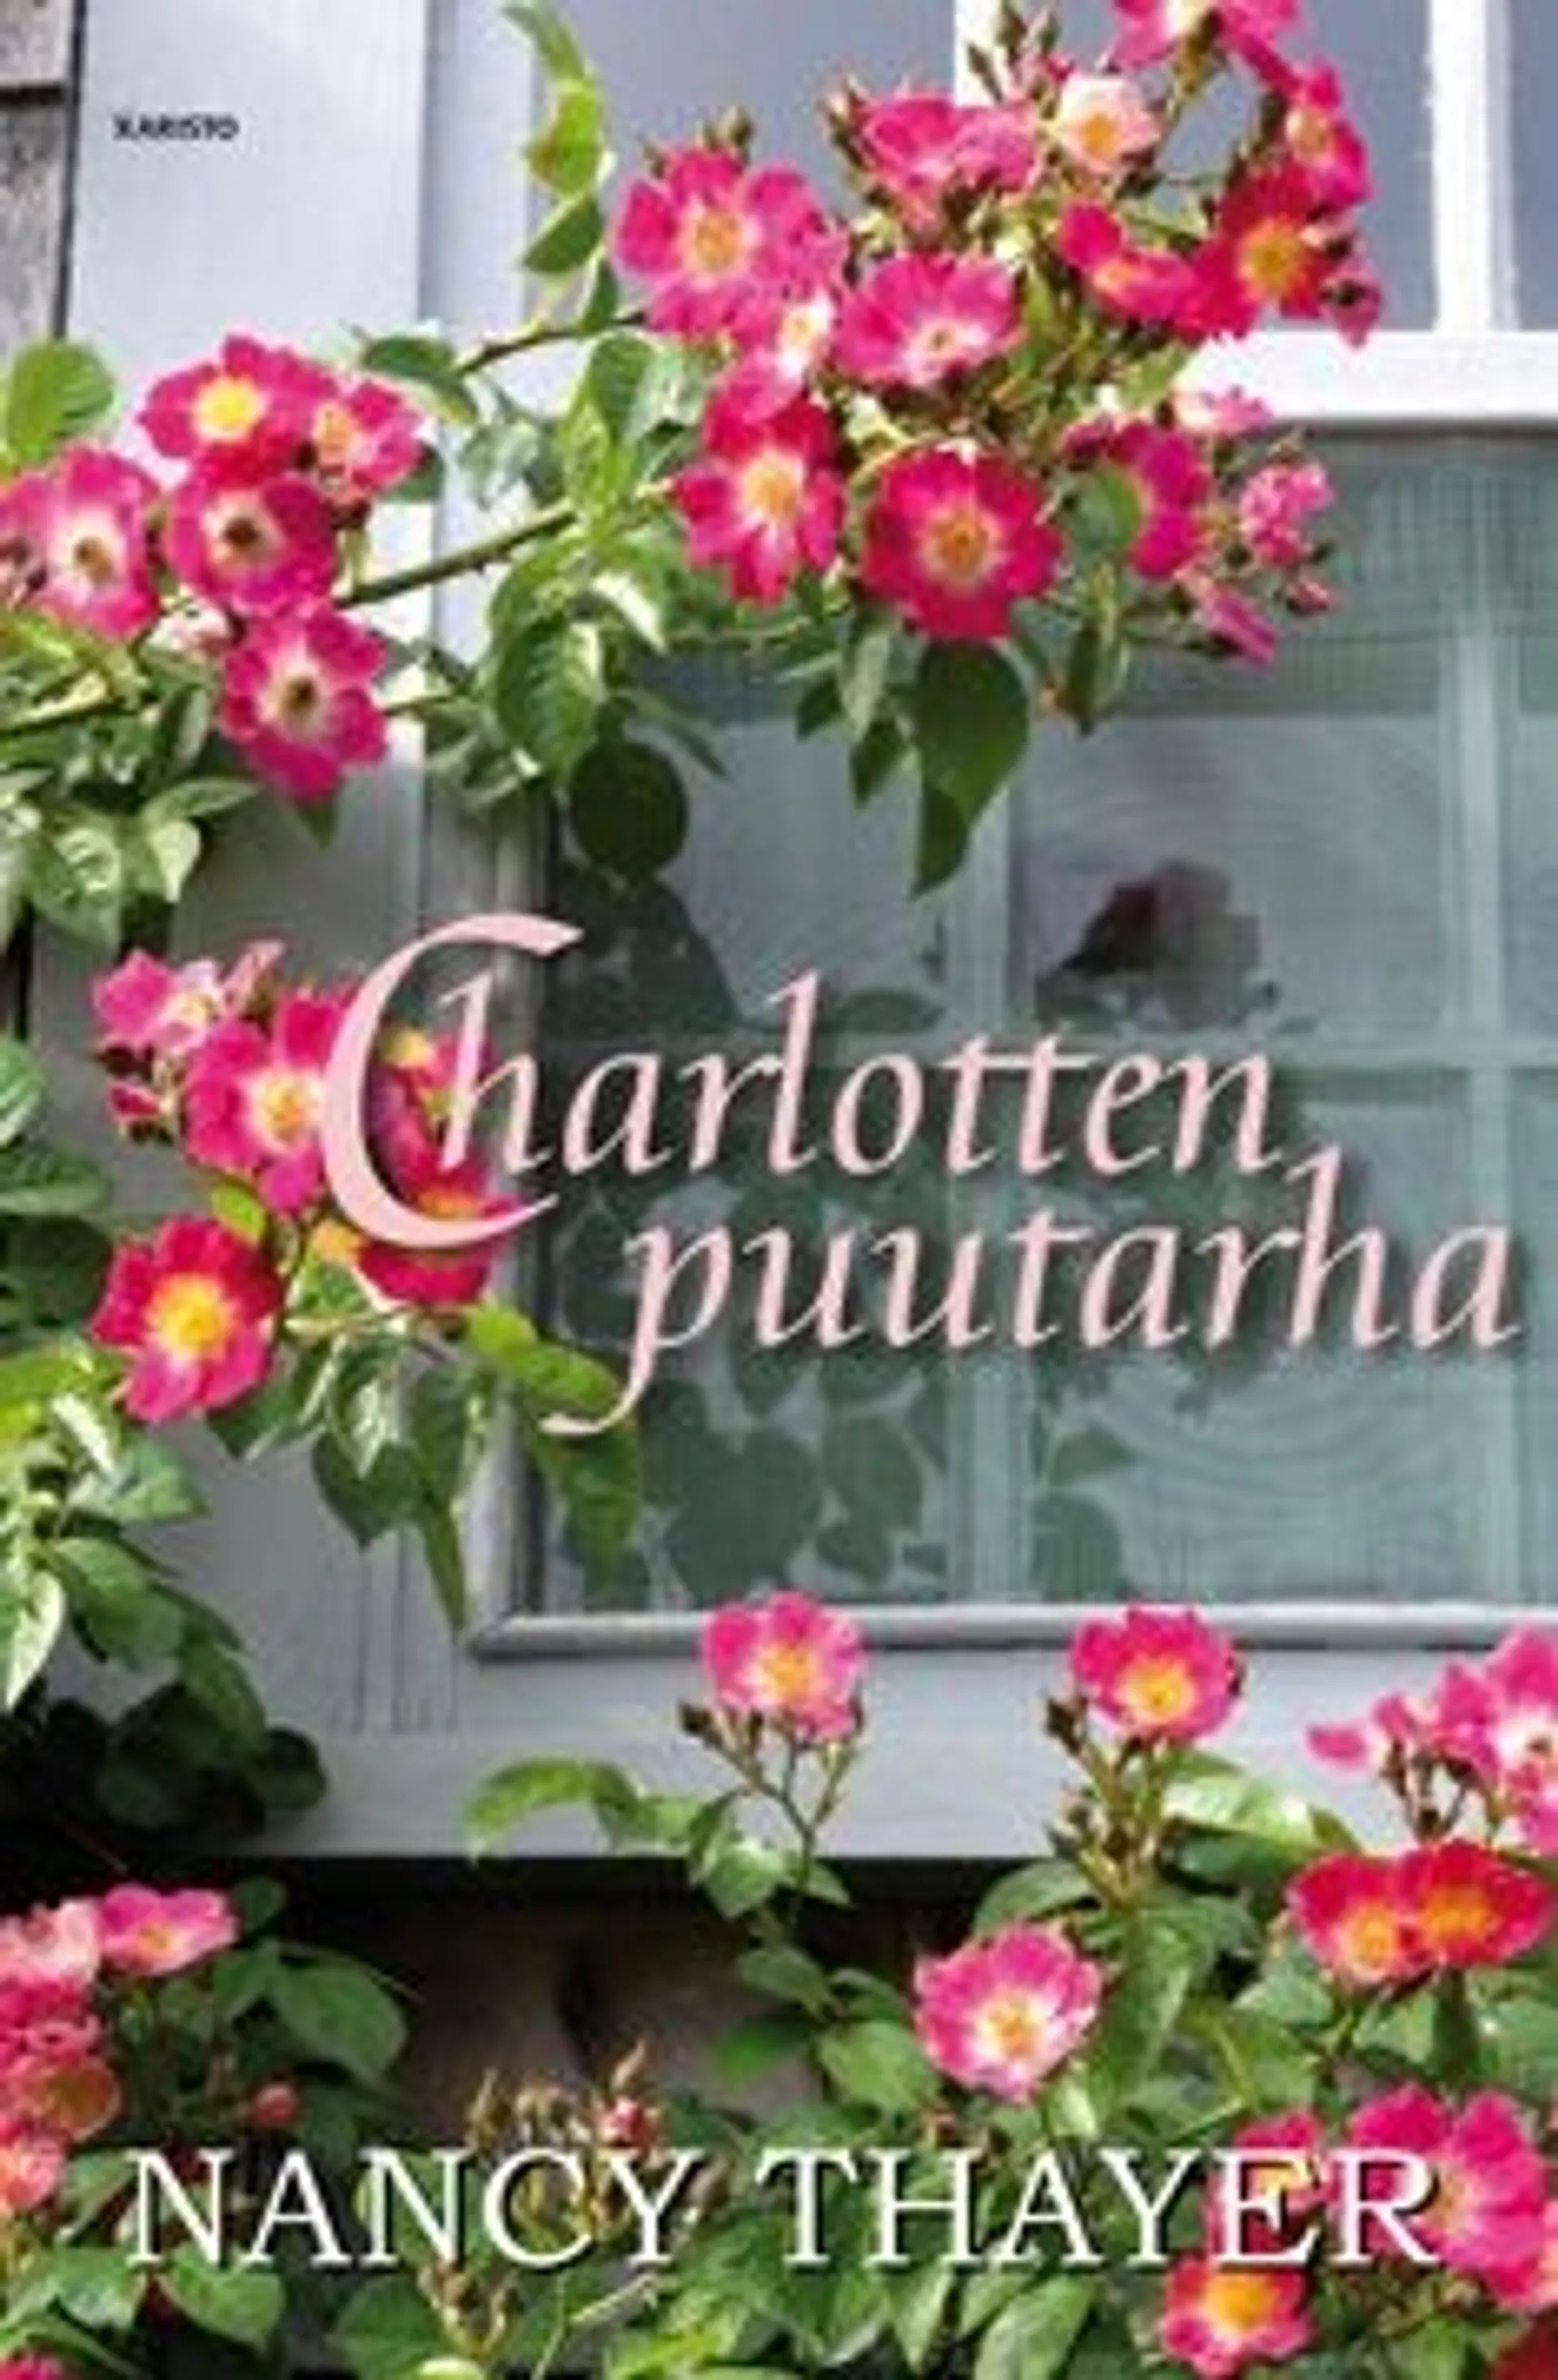 Thayer, Charlotten puutarha